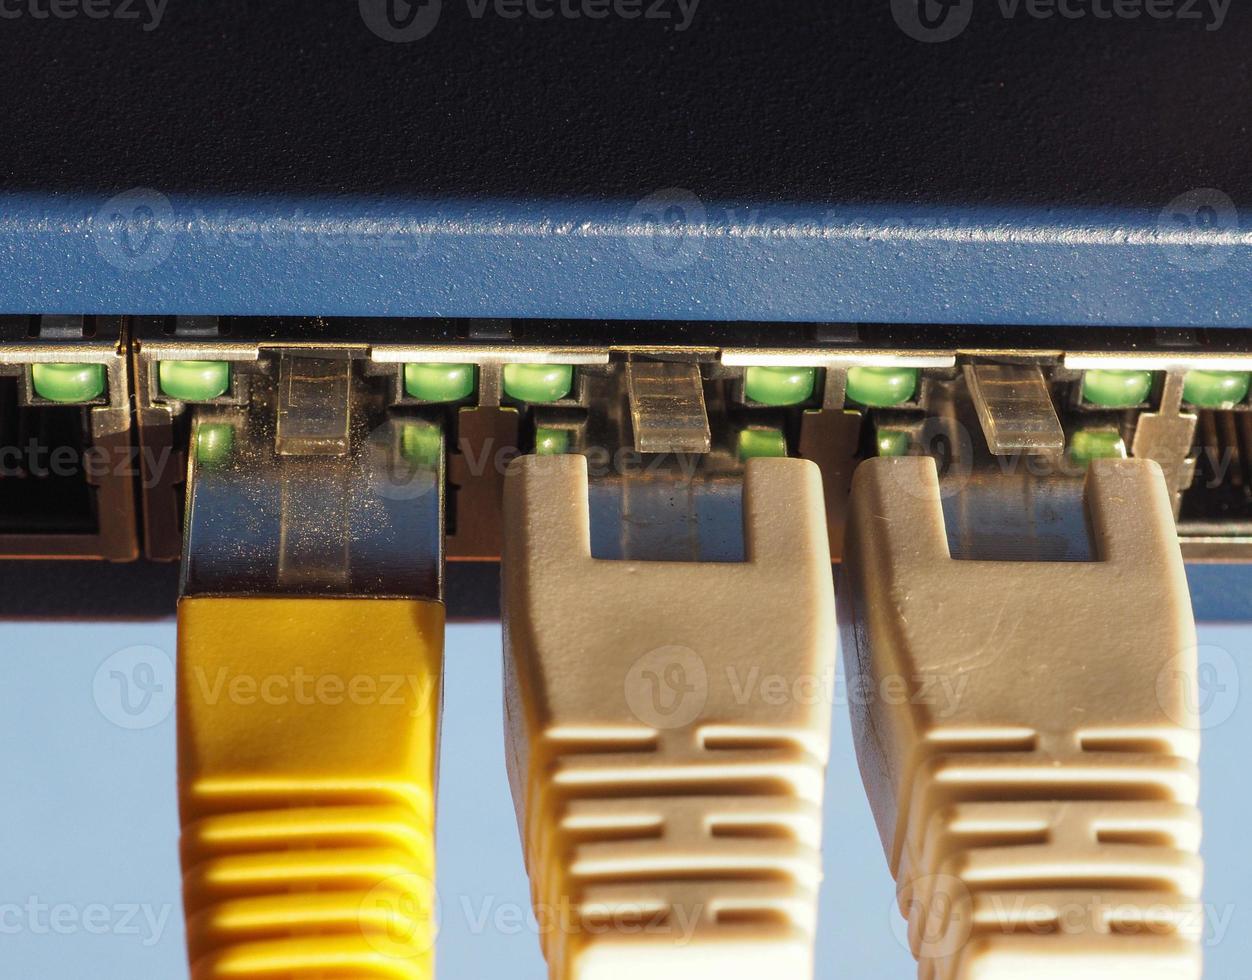 modem router switch med rj45 ethernet plug -portar foto